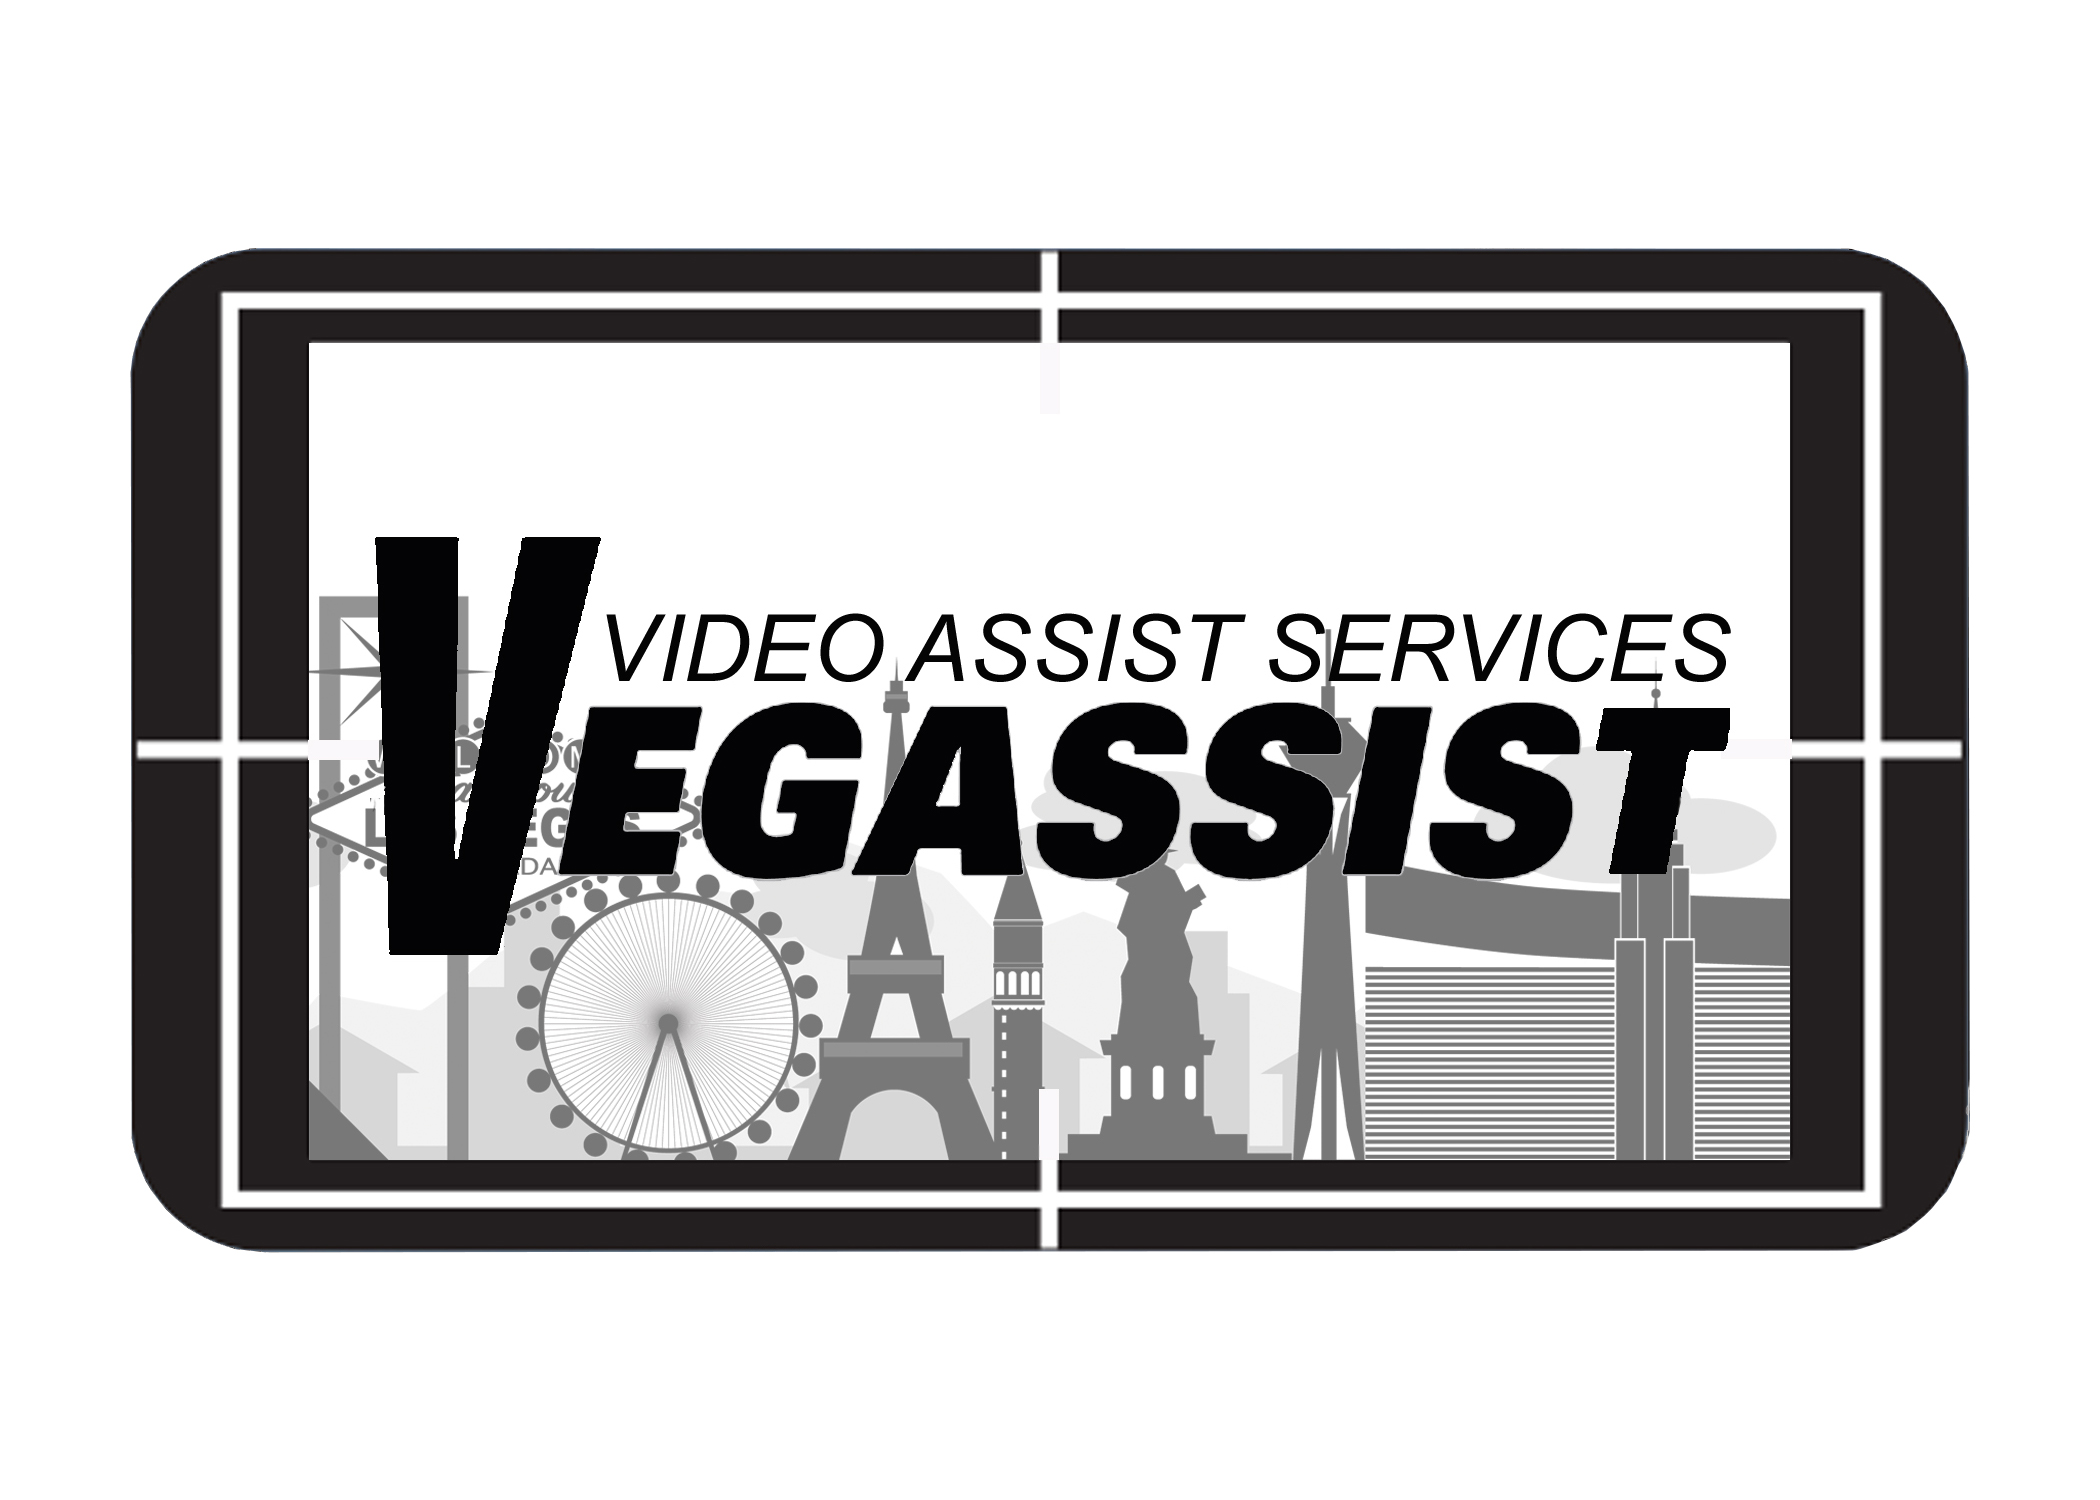 Vegassist LLC